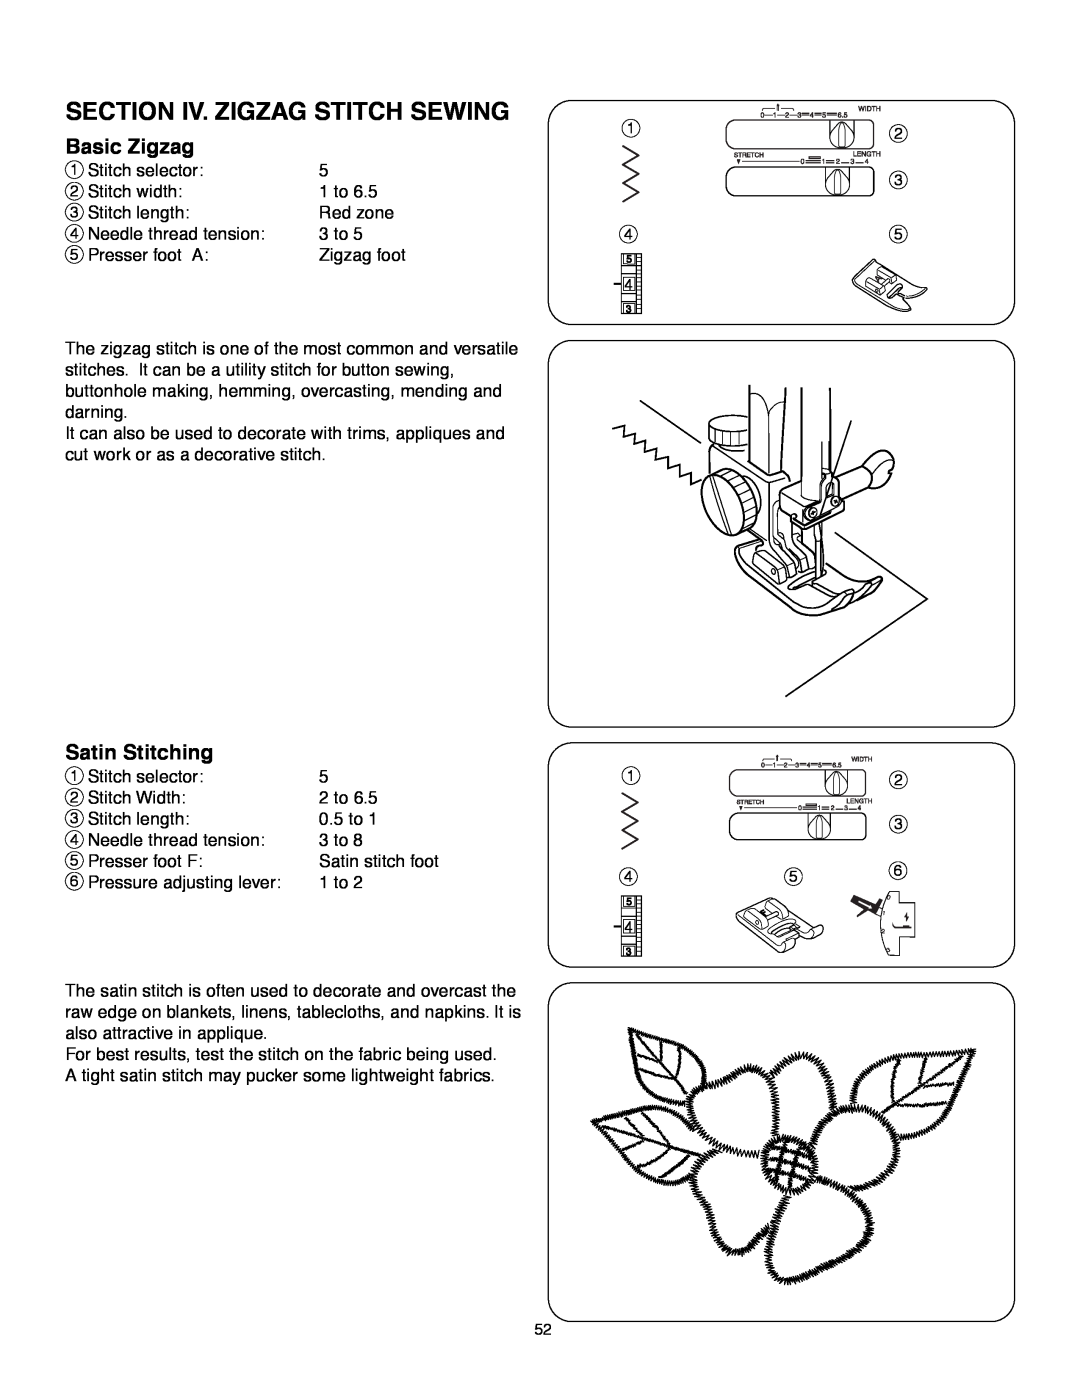 Janome MS-5027 instruction manual Section Iv. Zigzag Stitch Sewing, Basic Zigzag, Satin Stitching 